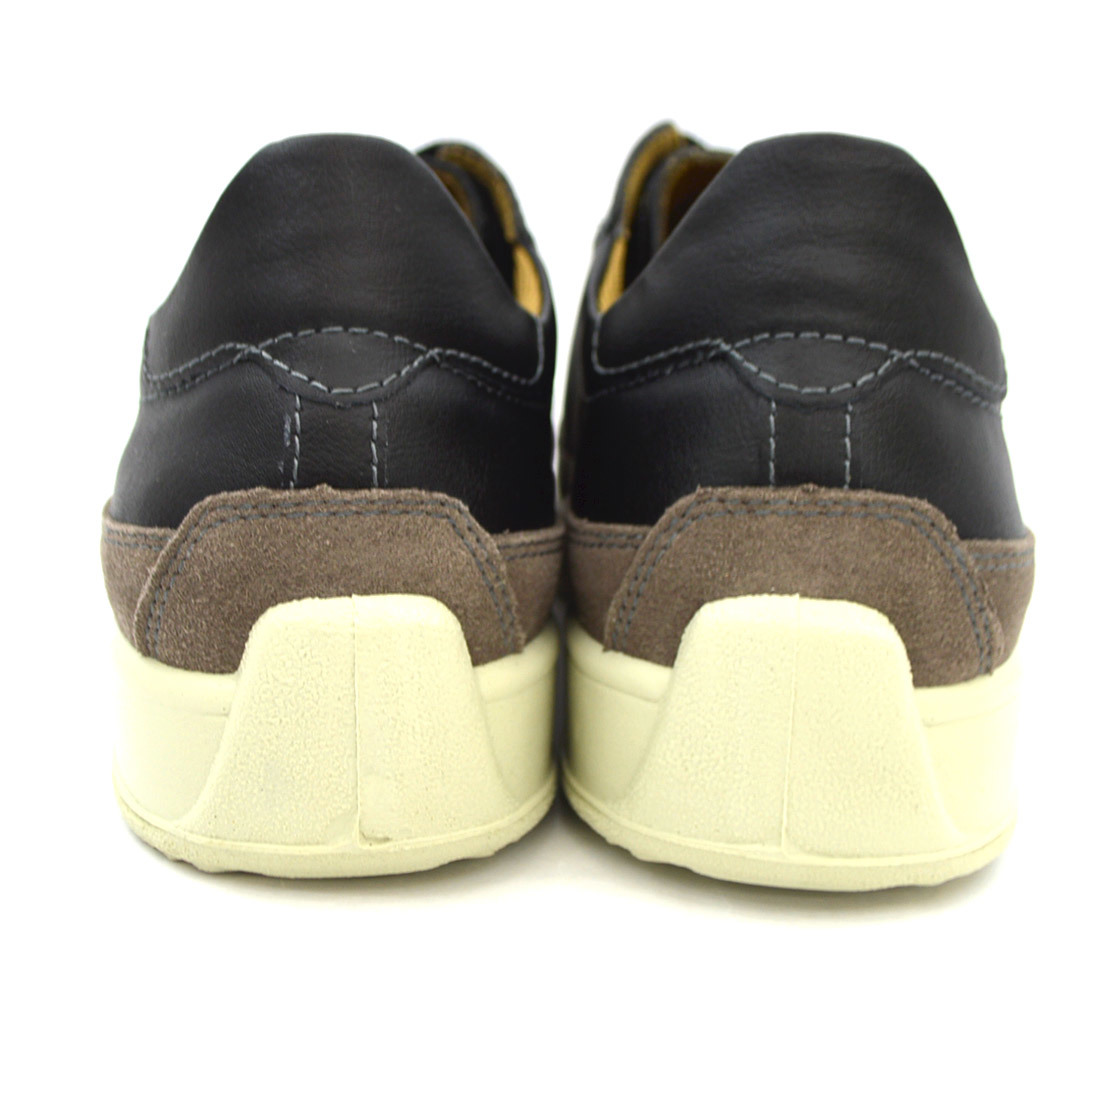 ^BOBSON Bobson повседневная обувь ходьба 5445 натуральная кожа сделано в Японии черный Black чёрный 26.5cm (0910010563-bk-s265)